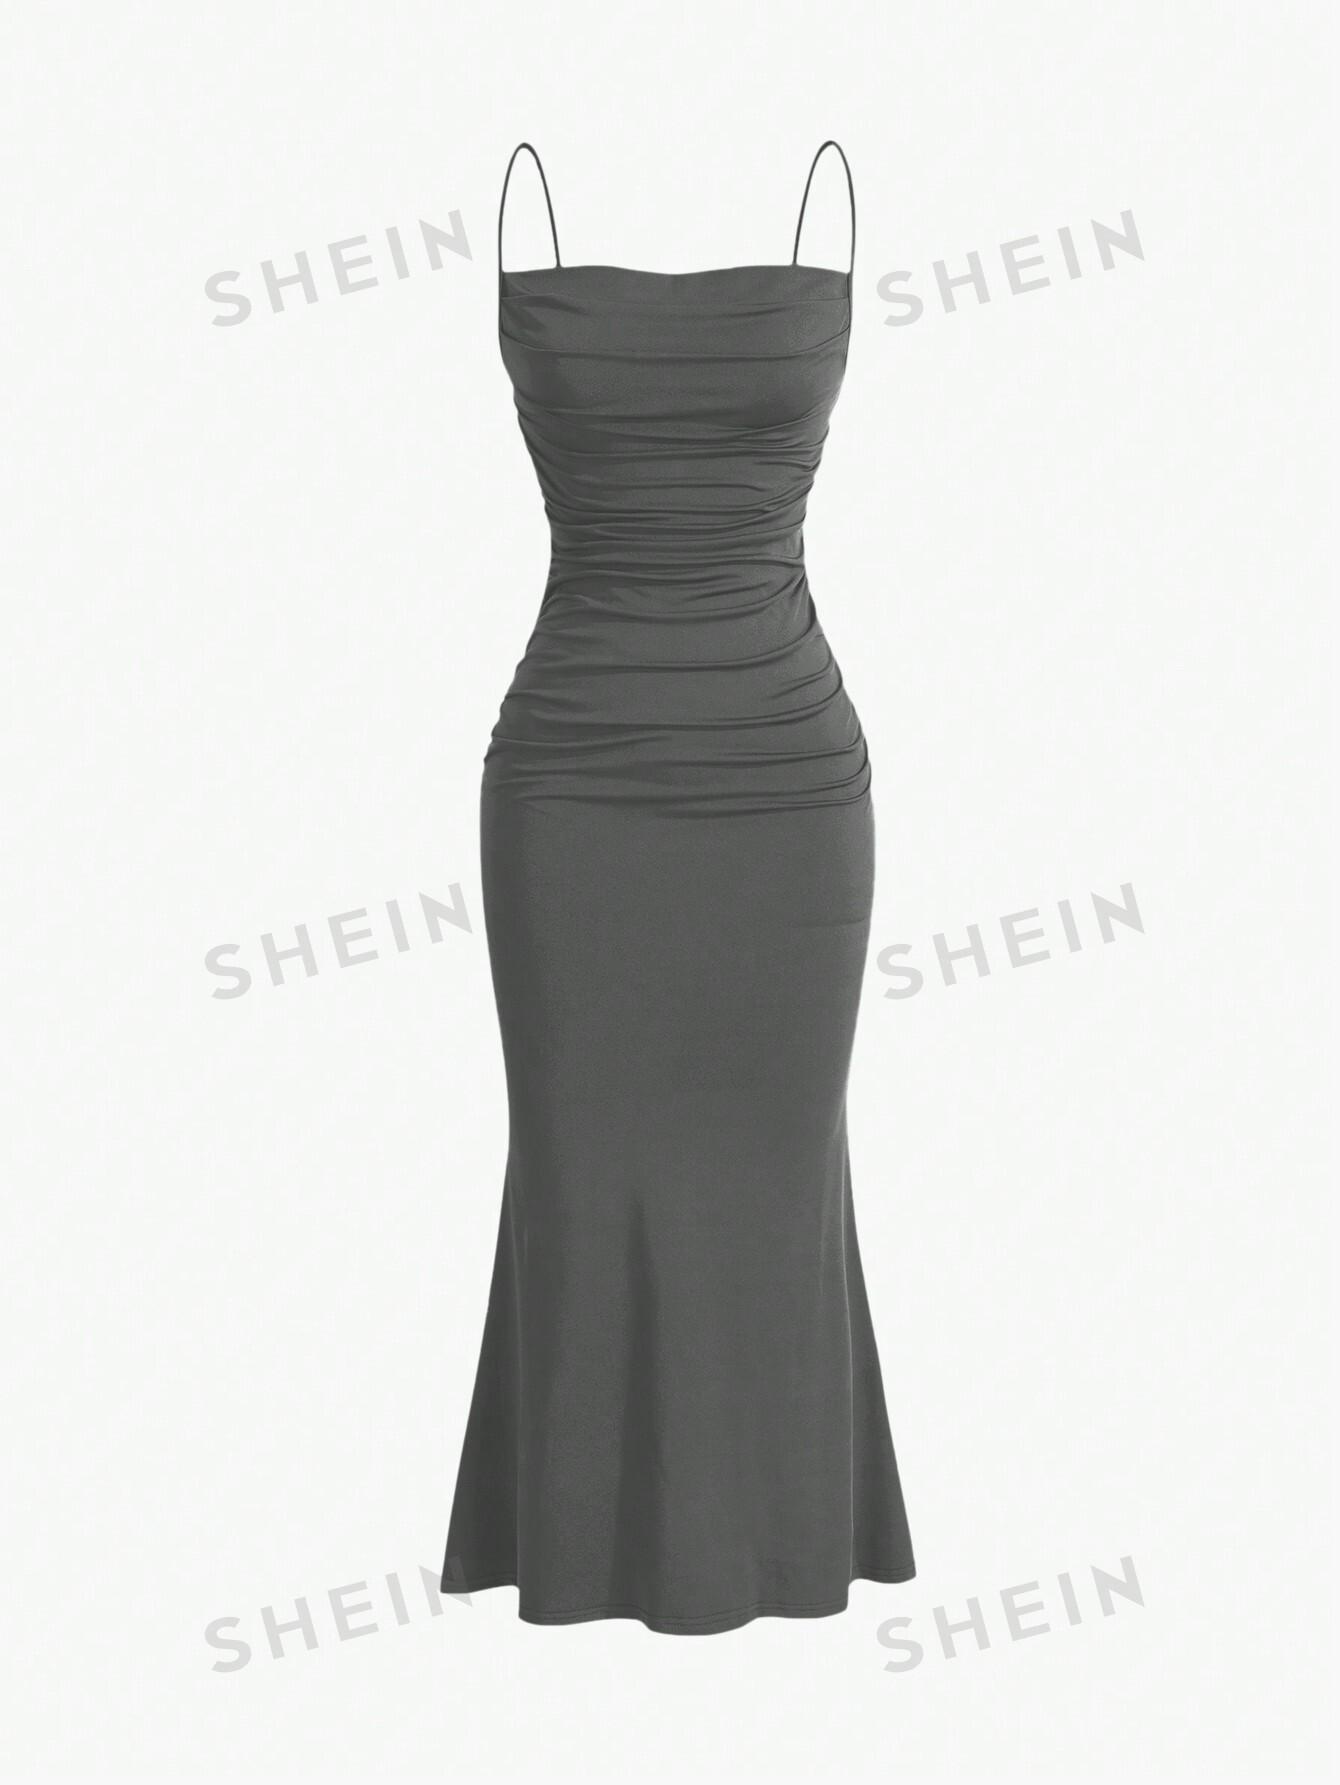 shein mod однотонное платье с гофрированной спиной и расклешенным подолом синий SHEIN MOD однотонное плиссированное платье с ремешками и подолом «рыбий хвост», темно-серый